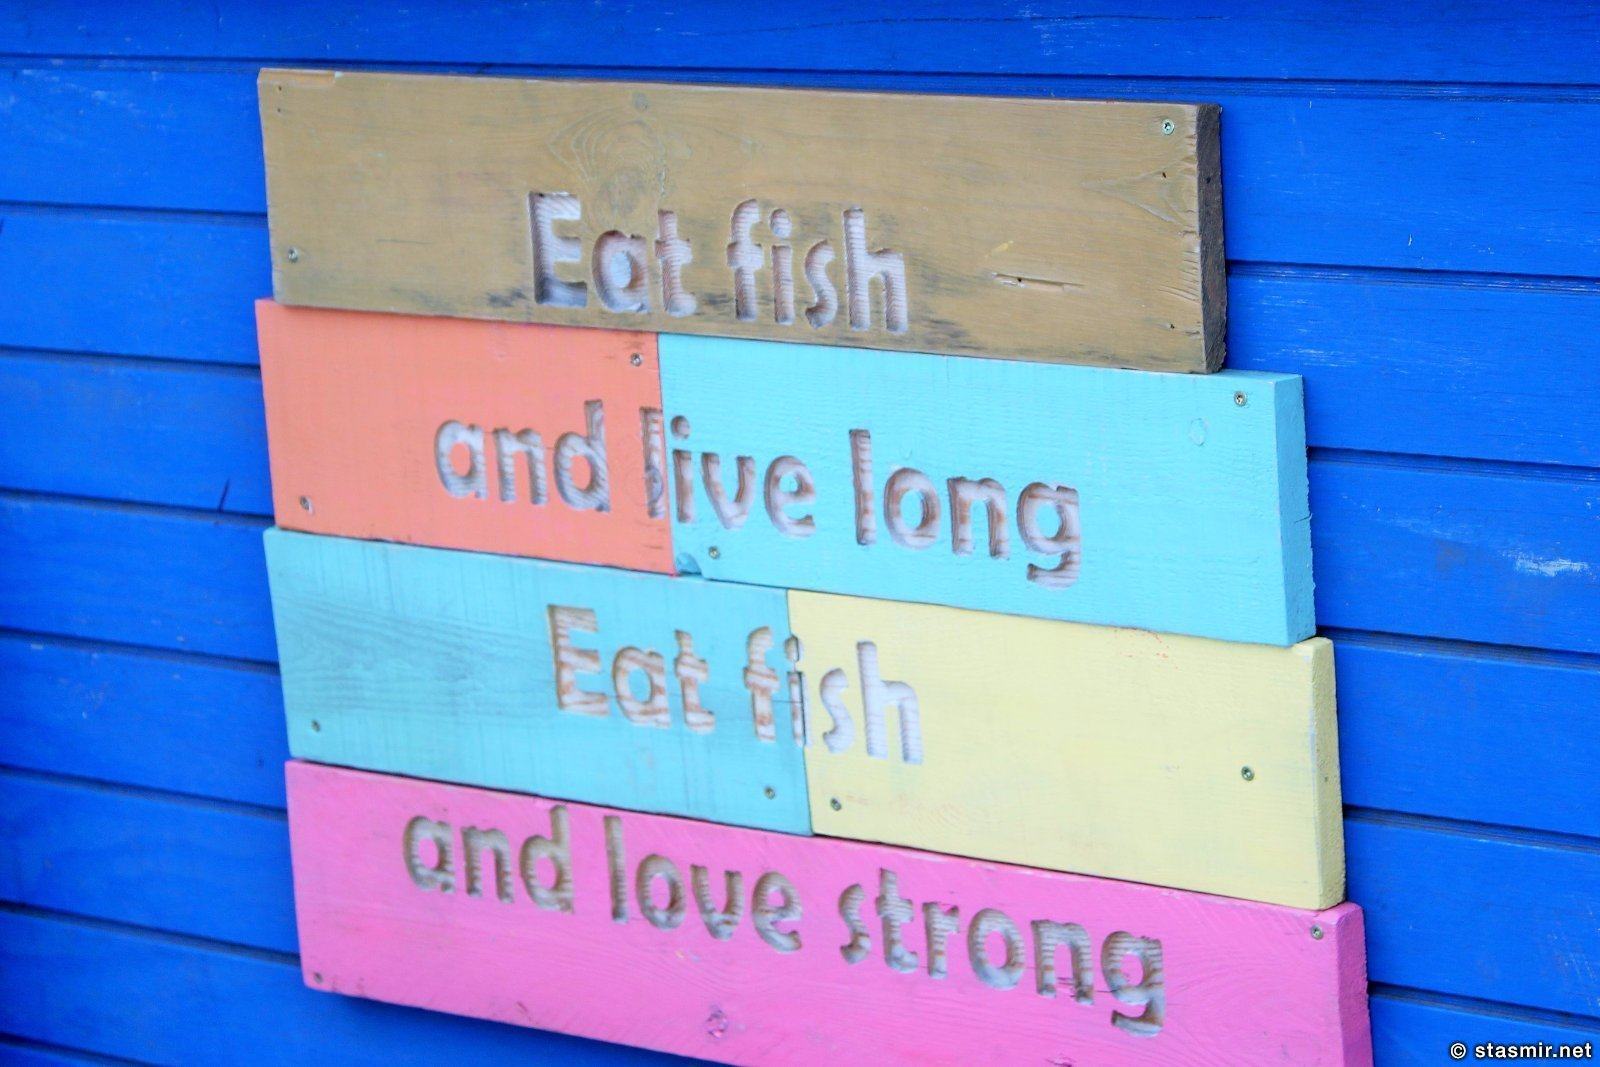 Гриндавик, Рейкьянес, Исландия, Eat fish live long, eat fish love strong, Photo Stasmir, Фото Стасмир